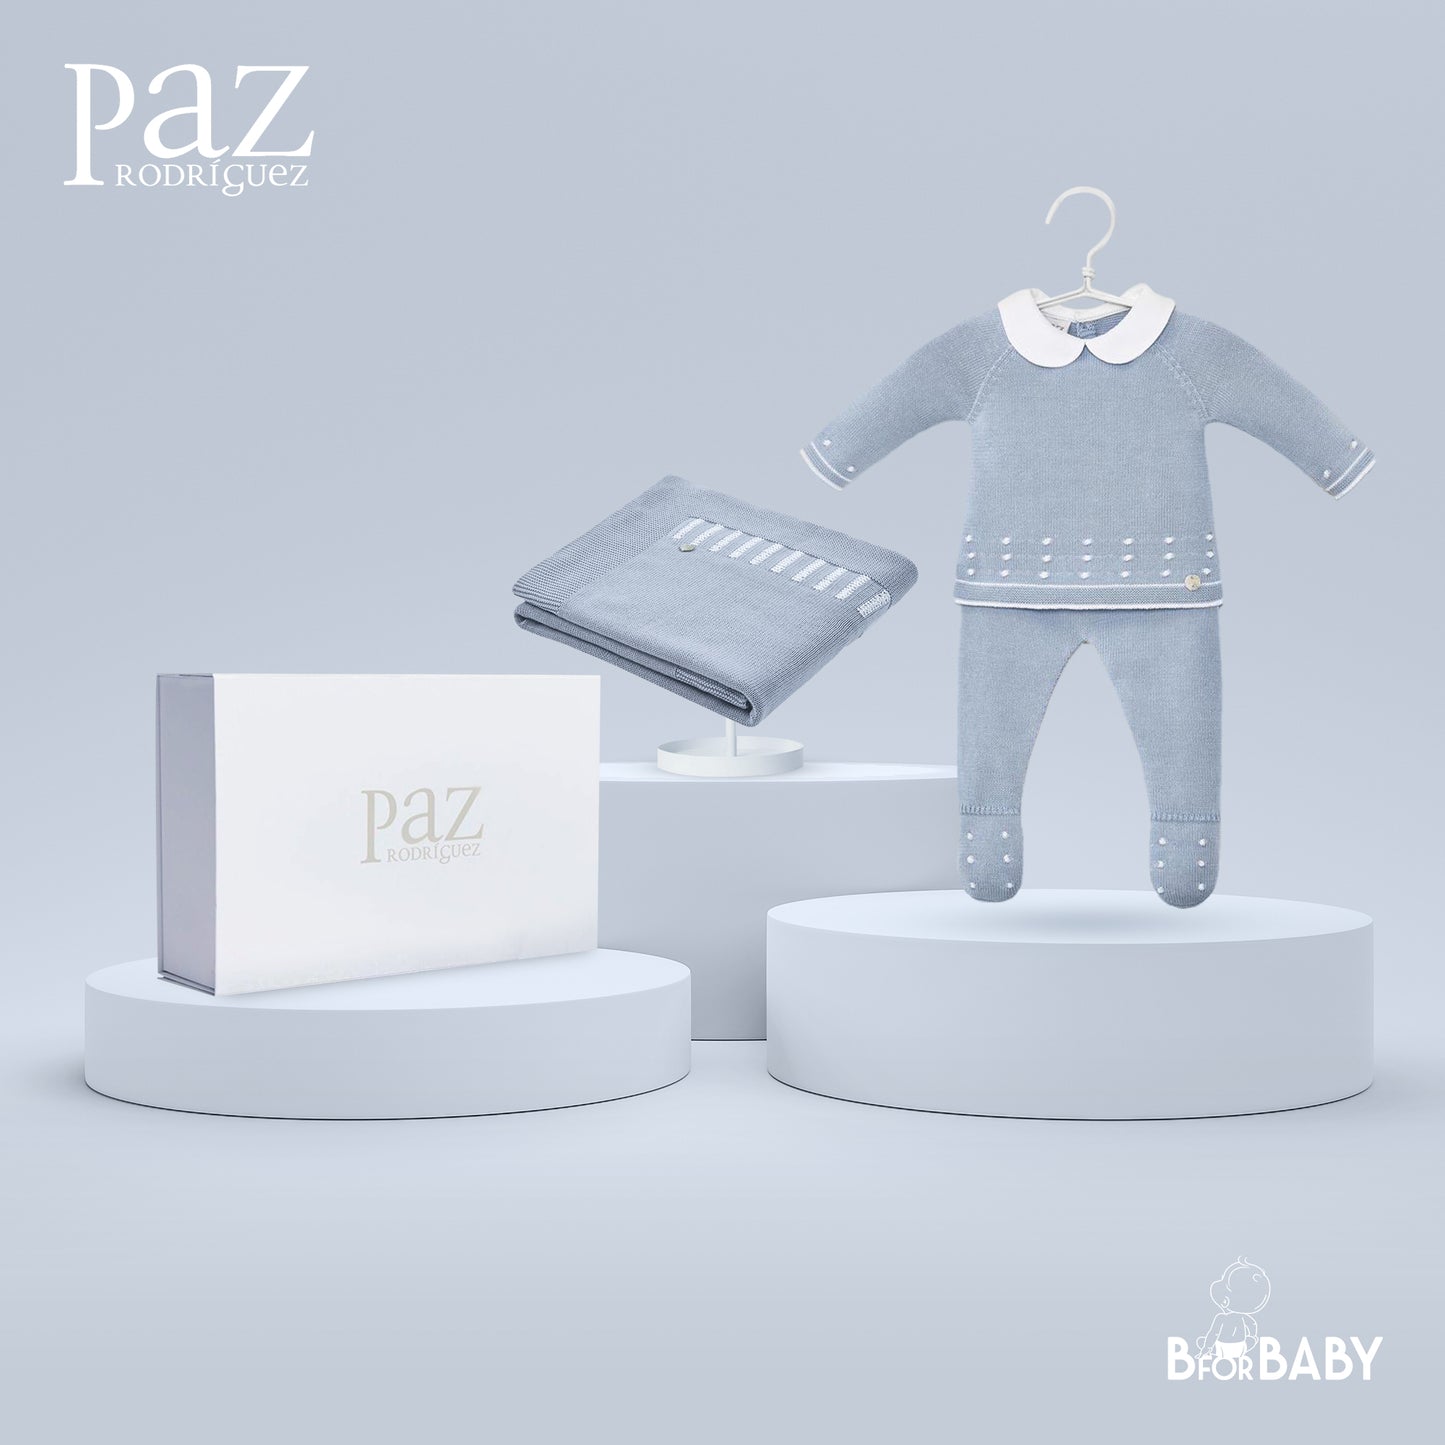 Paz Rodriguez 3-Piece (Sweater, Pants, Blanket) Gift Set - Blue Cloud